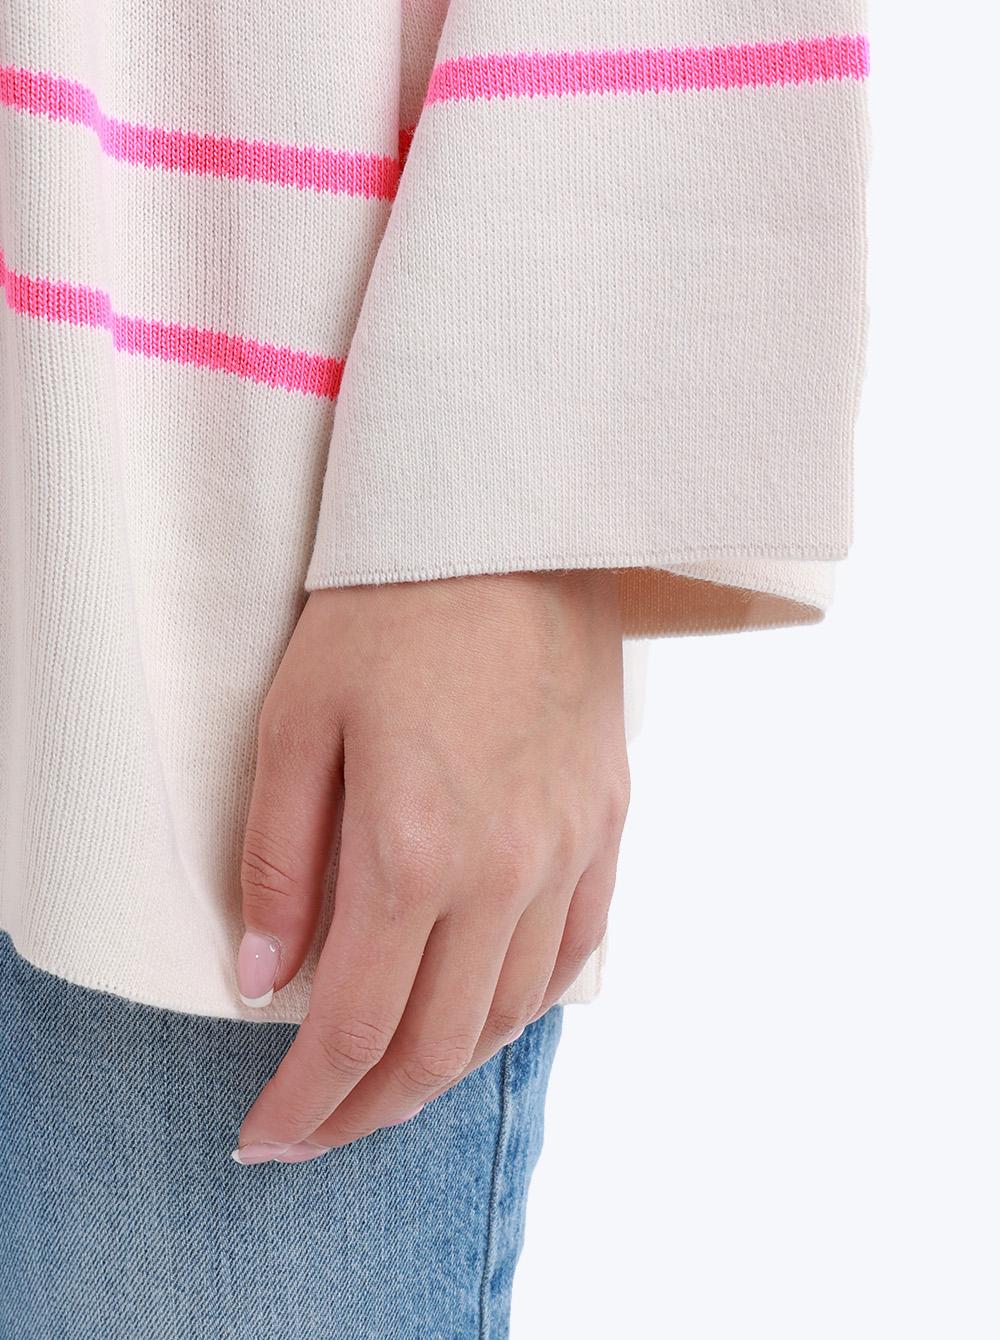 Selected image for QU STYLE Ženska džemper na pruge roze-beli